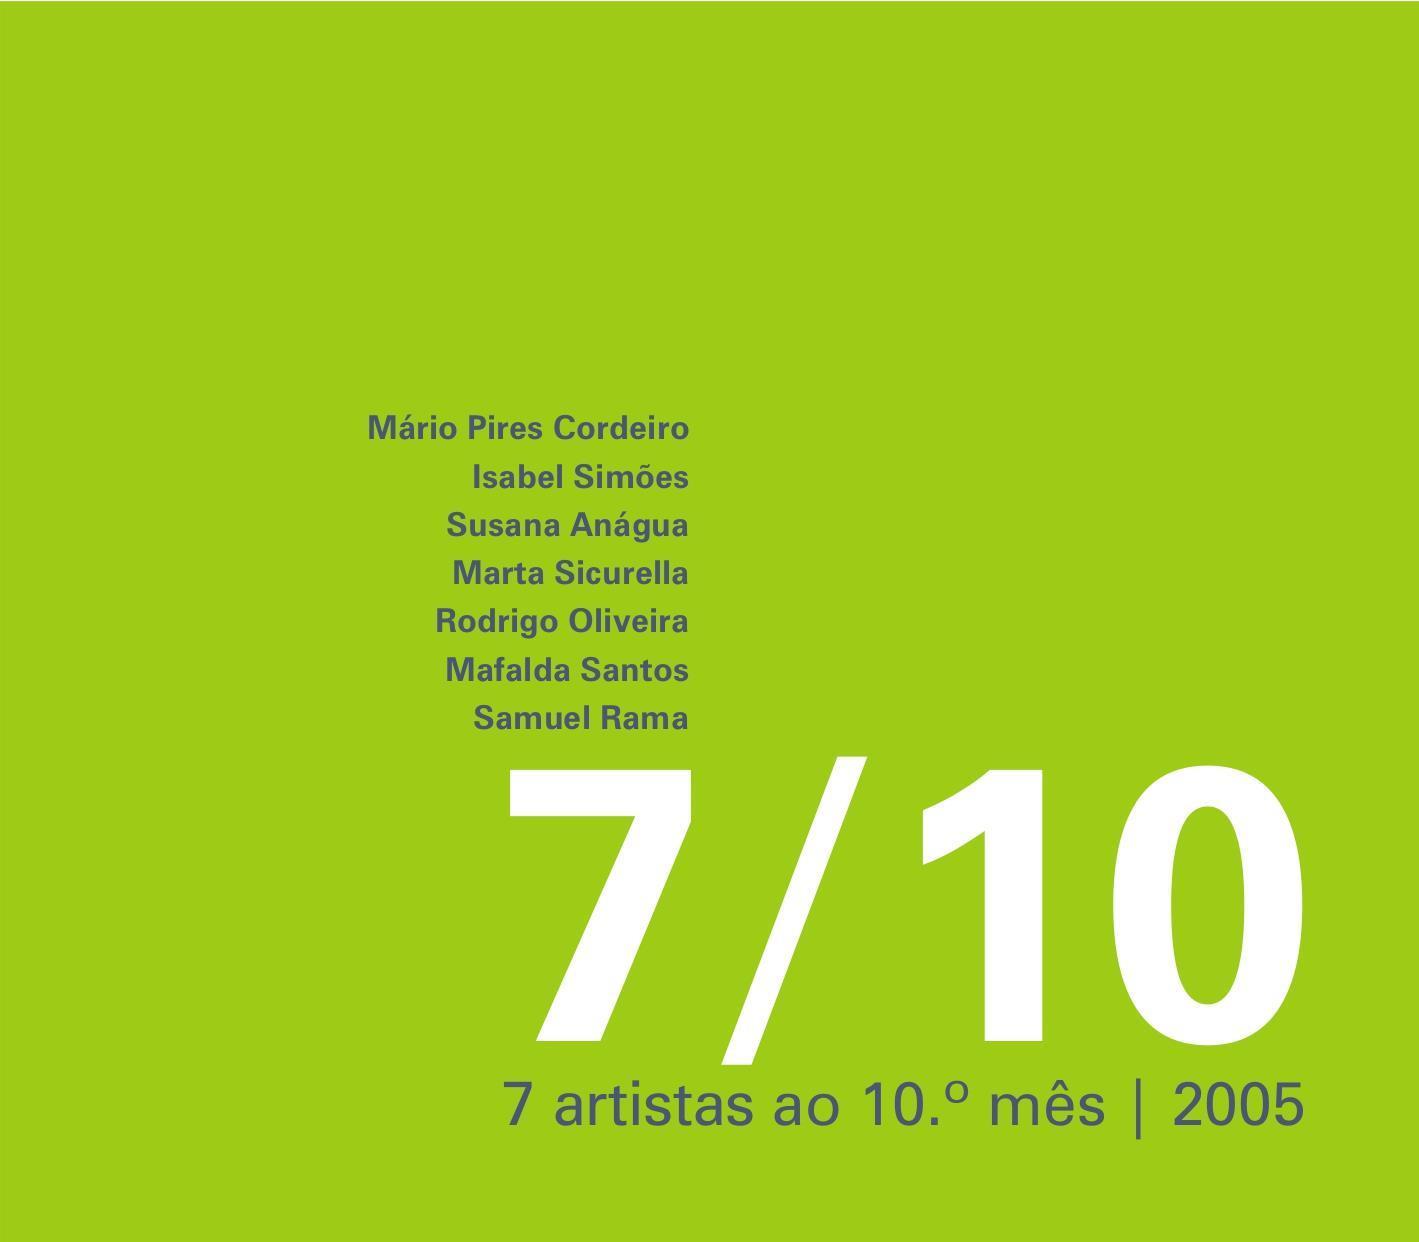 Sete Artistas ao Décimo Mês (2005)